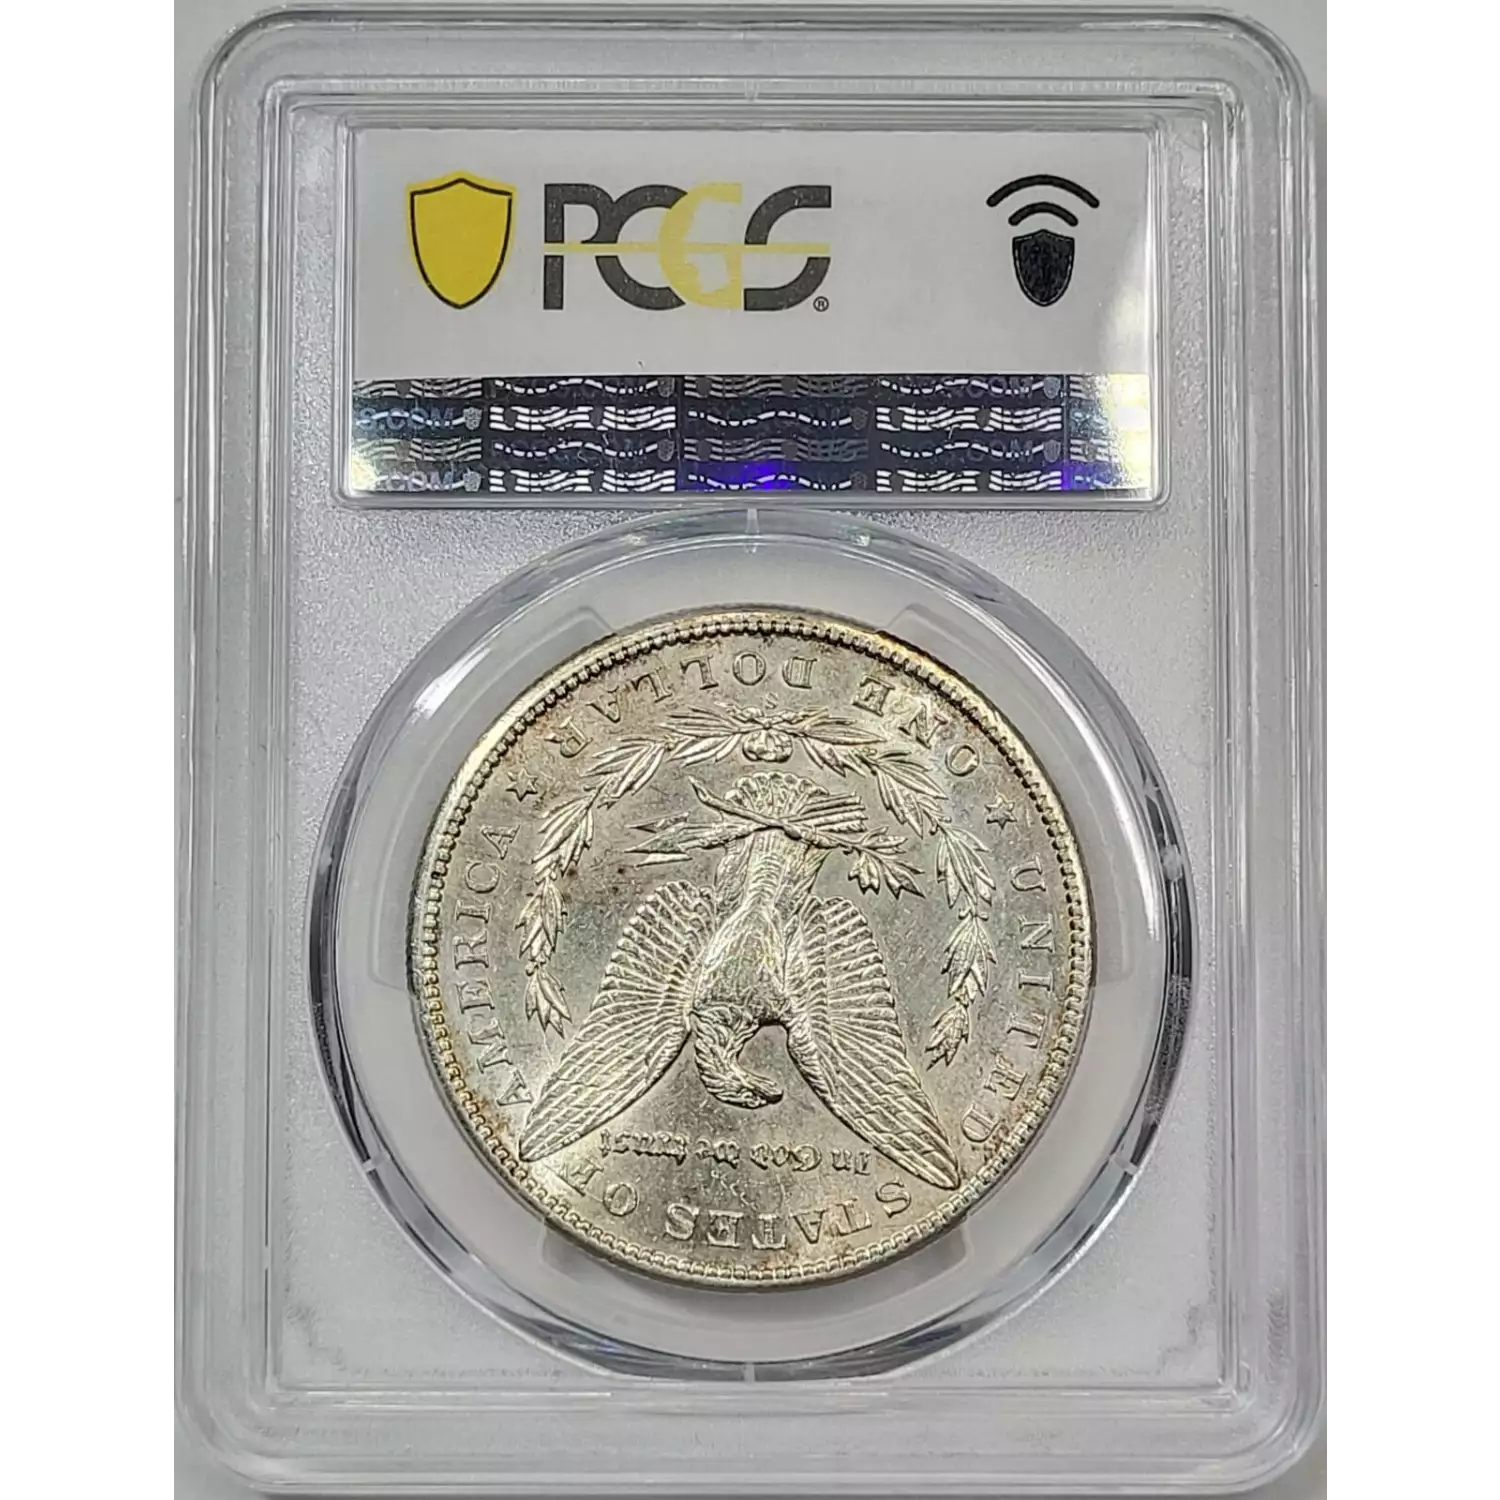 1899-S $1 (4)